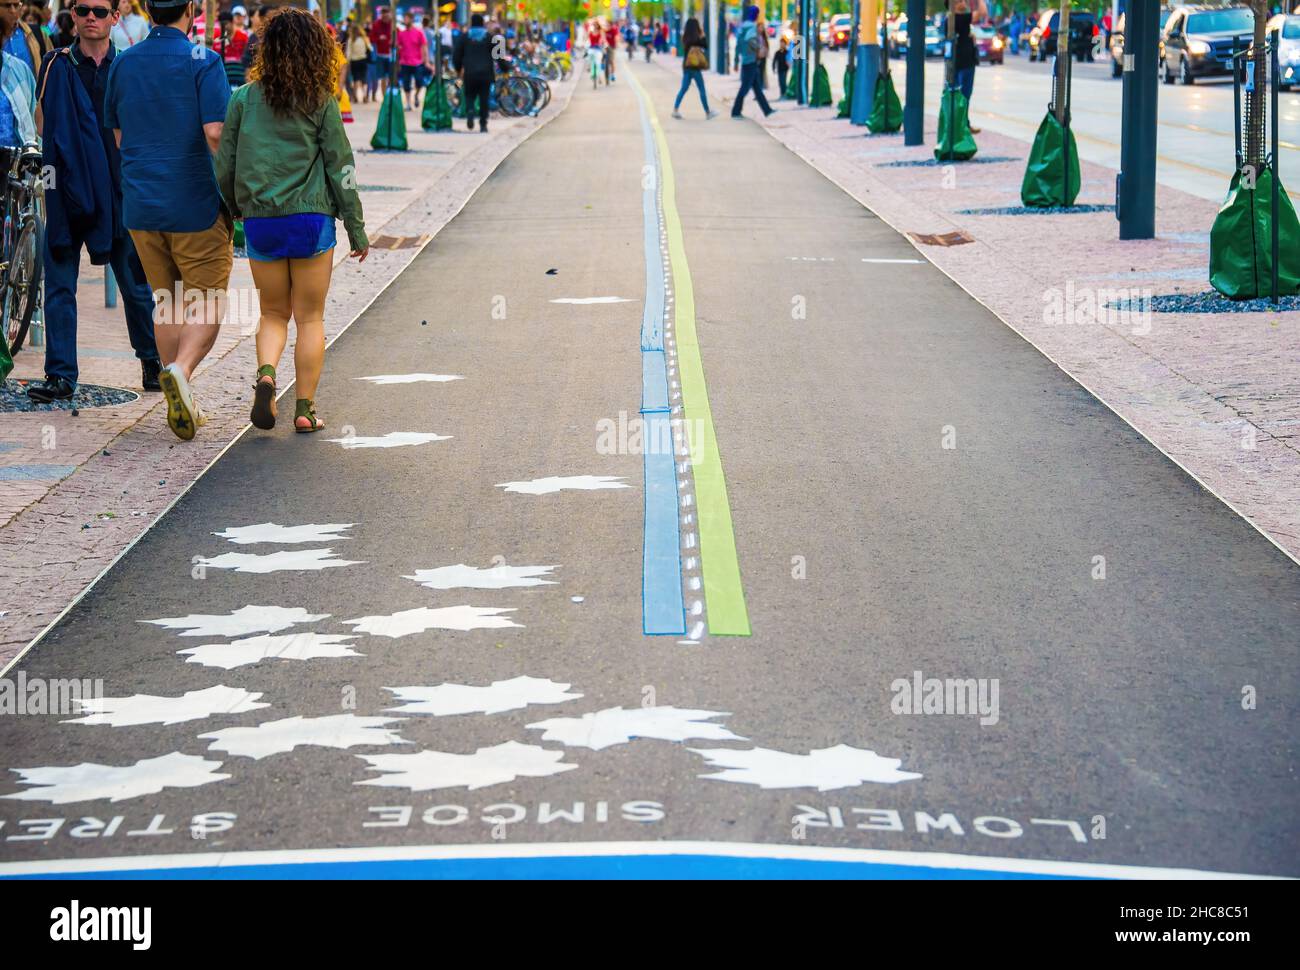 Toronto, Kanada - 1. Juli 2015: Die neuen Fahrradwege im Hafengebiet. Nach der Modernisierung der Gegend Fußgänger und Radfahrer haben bessere conditi Stockfoto